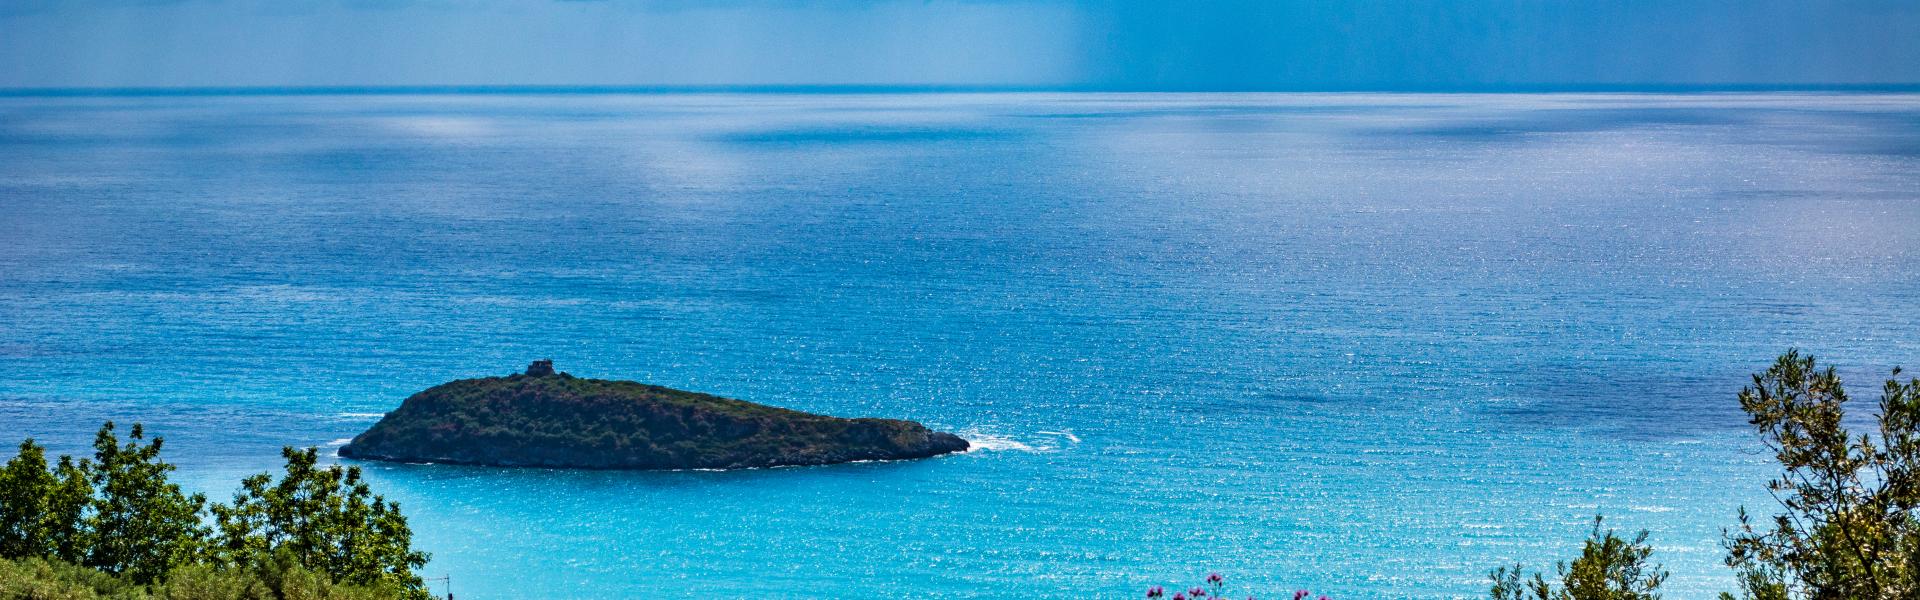 Costa Sud Sardegna Scenic View